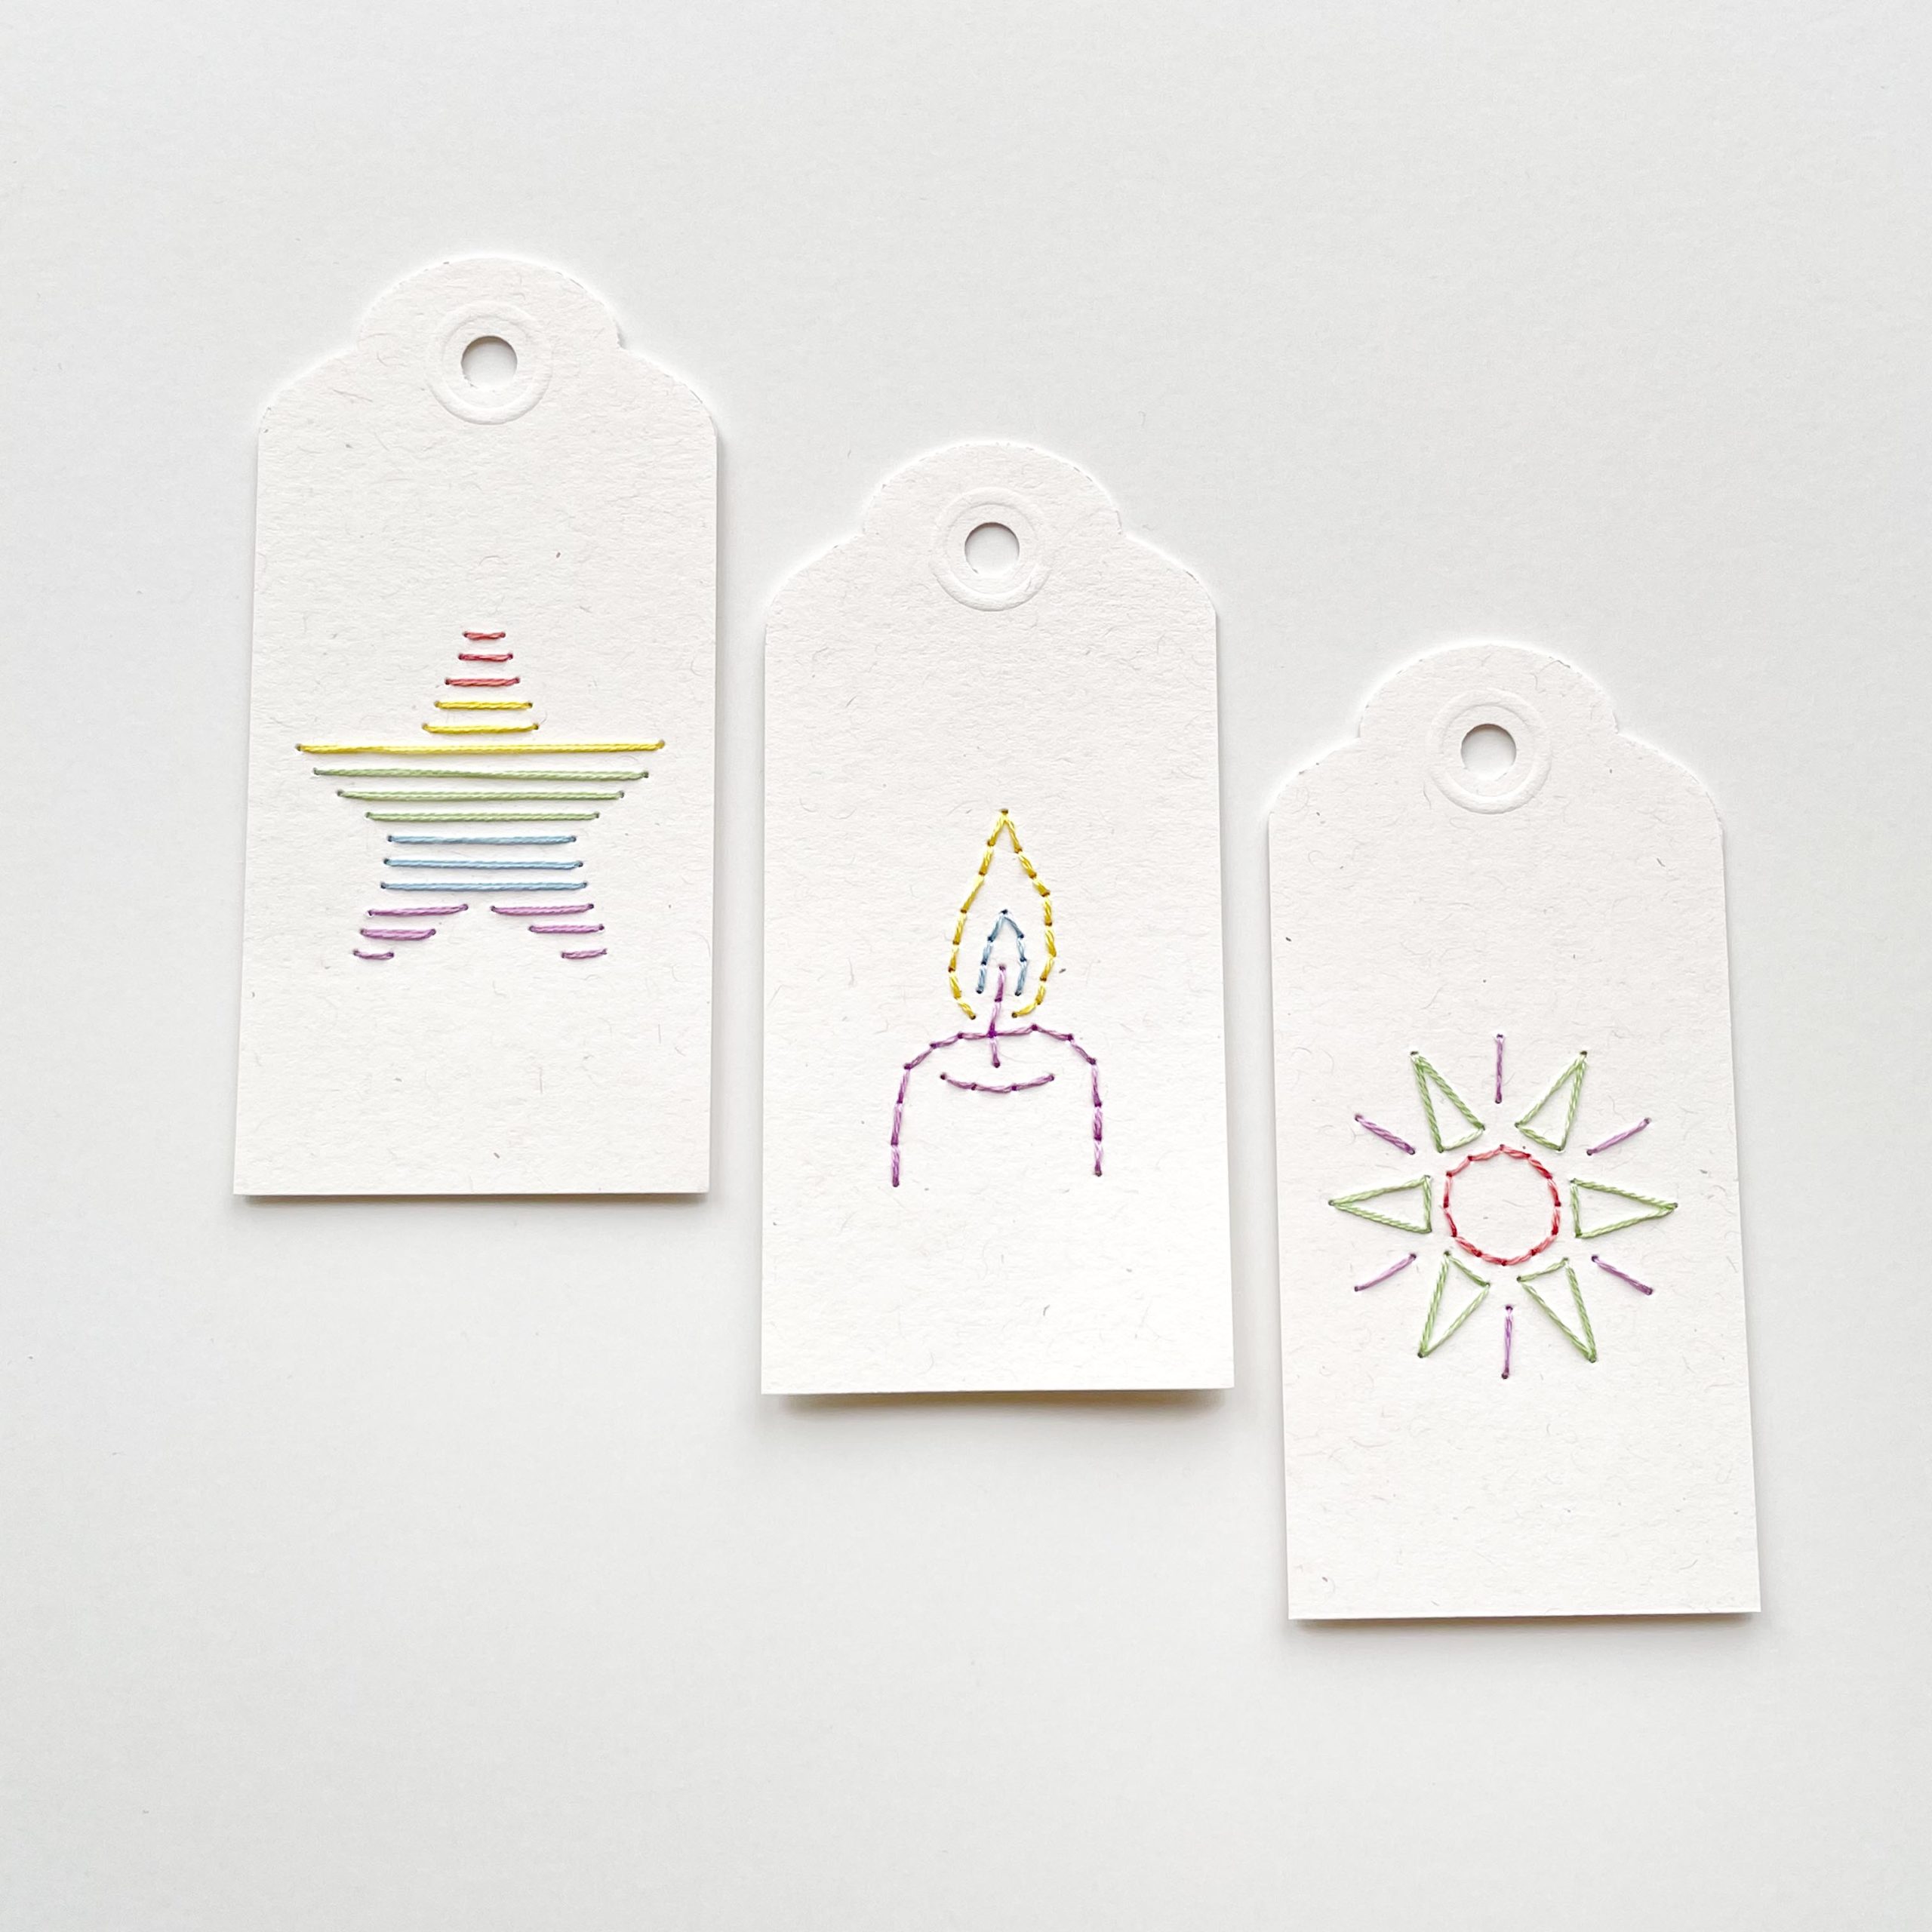 Shine Your Light mini paper embroidery patterns by Mayuka Fiber Art